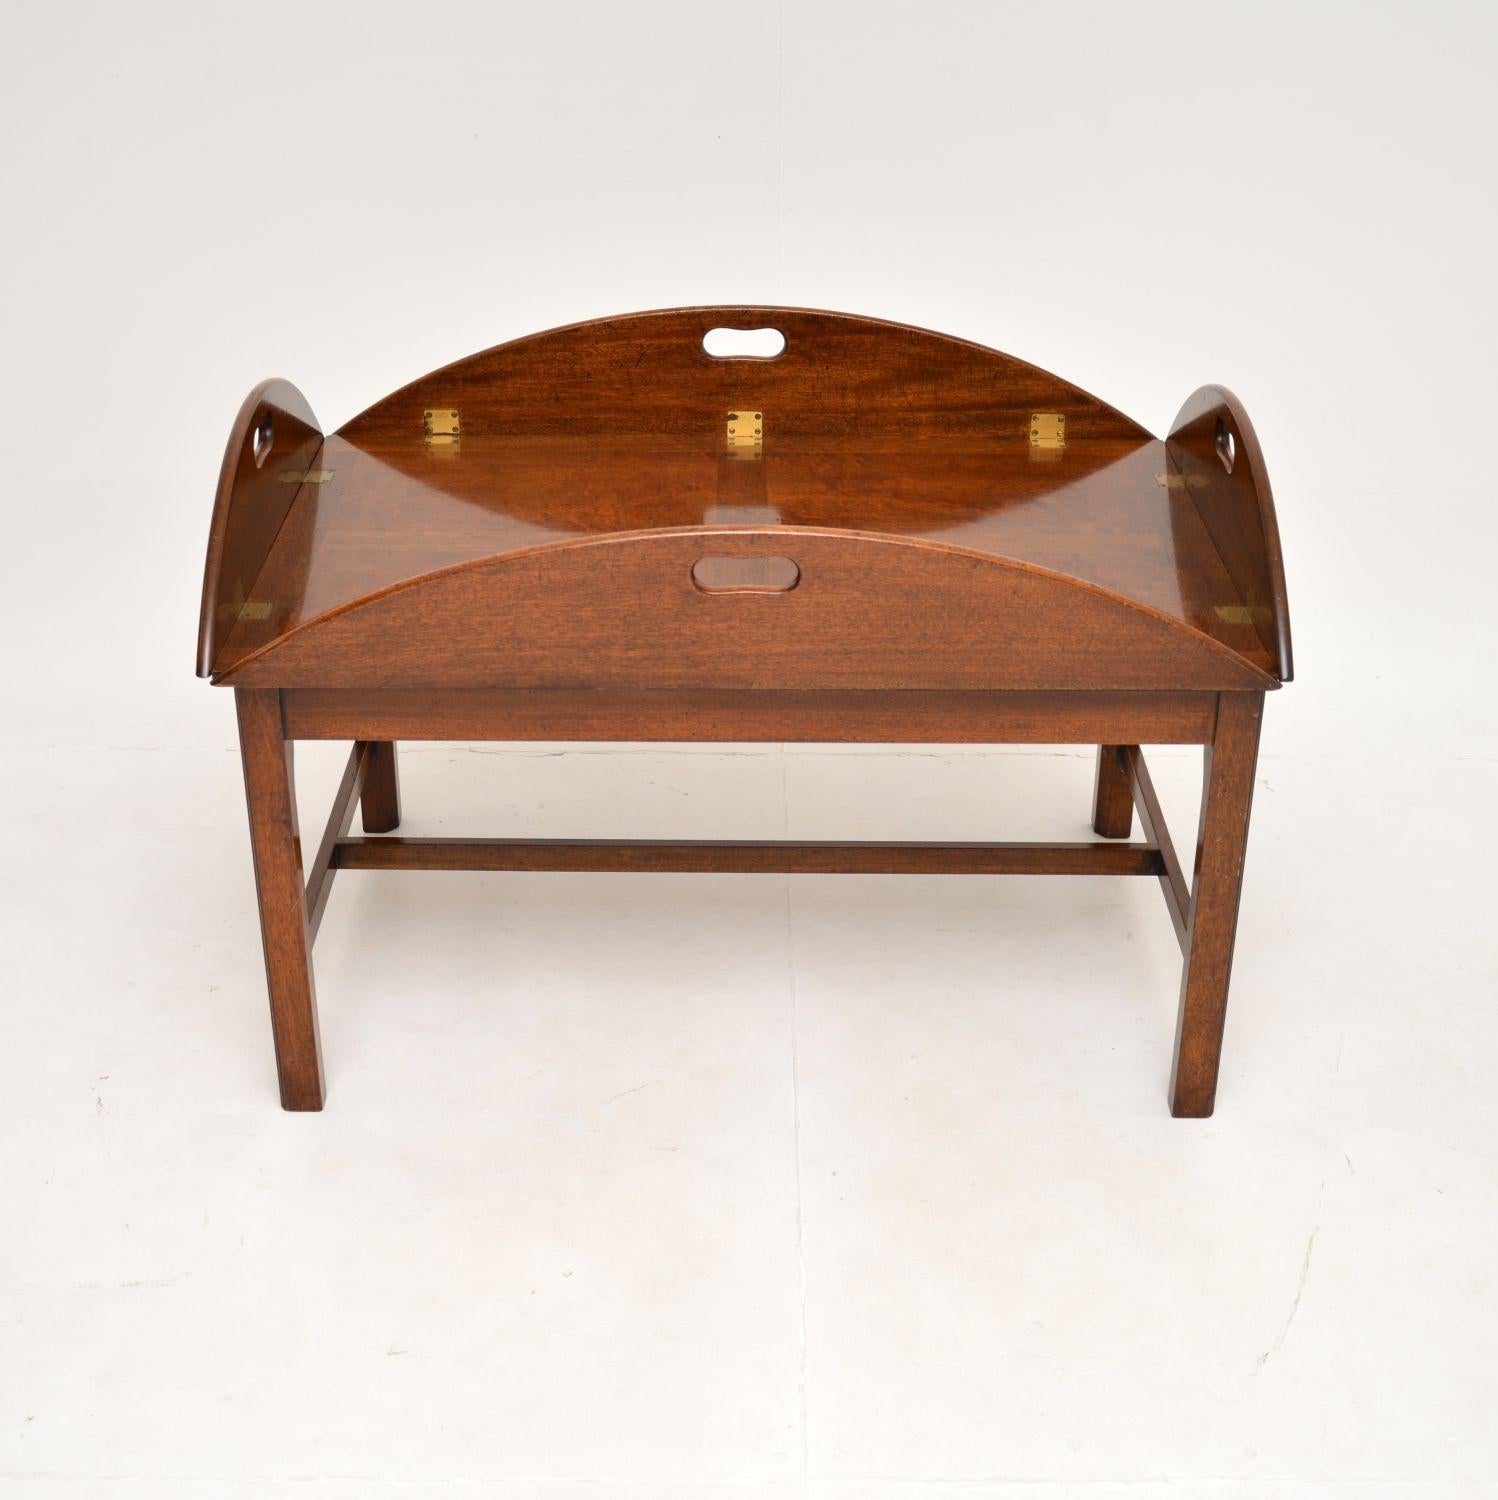 Une fantastique table basse ancienne à plateau de maître d'hôtel. Il a été fabriqué en Angleterre, il date des années 1950 environ.

Il est d'une taille impressionnante et d'une superbe qualité. Le grand plateau ovale a des bords qui se replient,